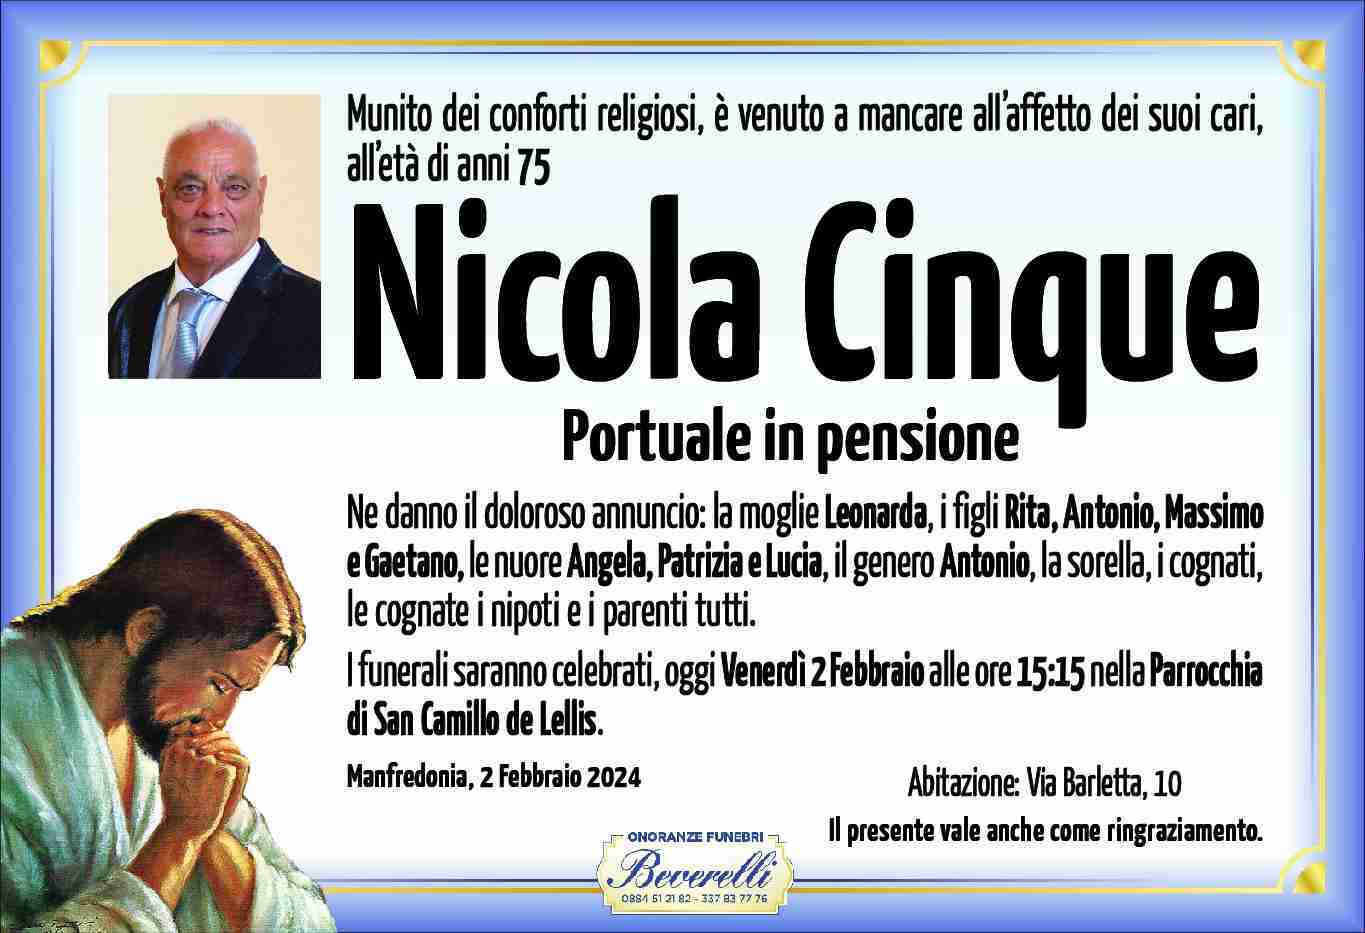 Nicola Cinque